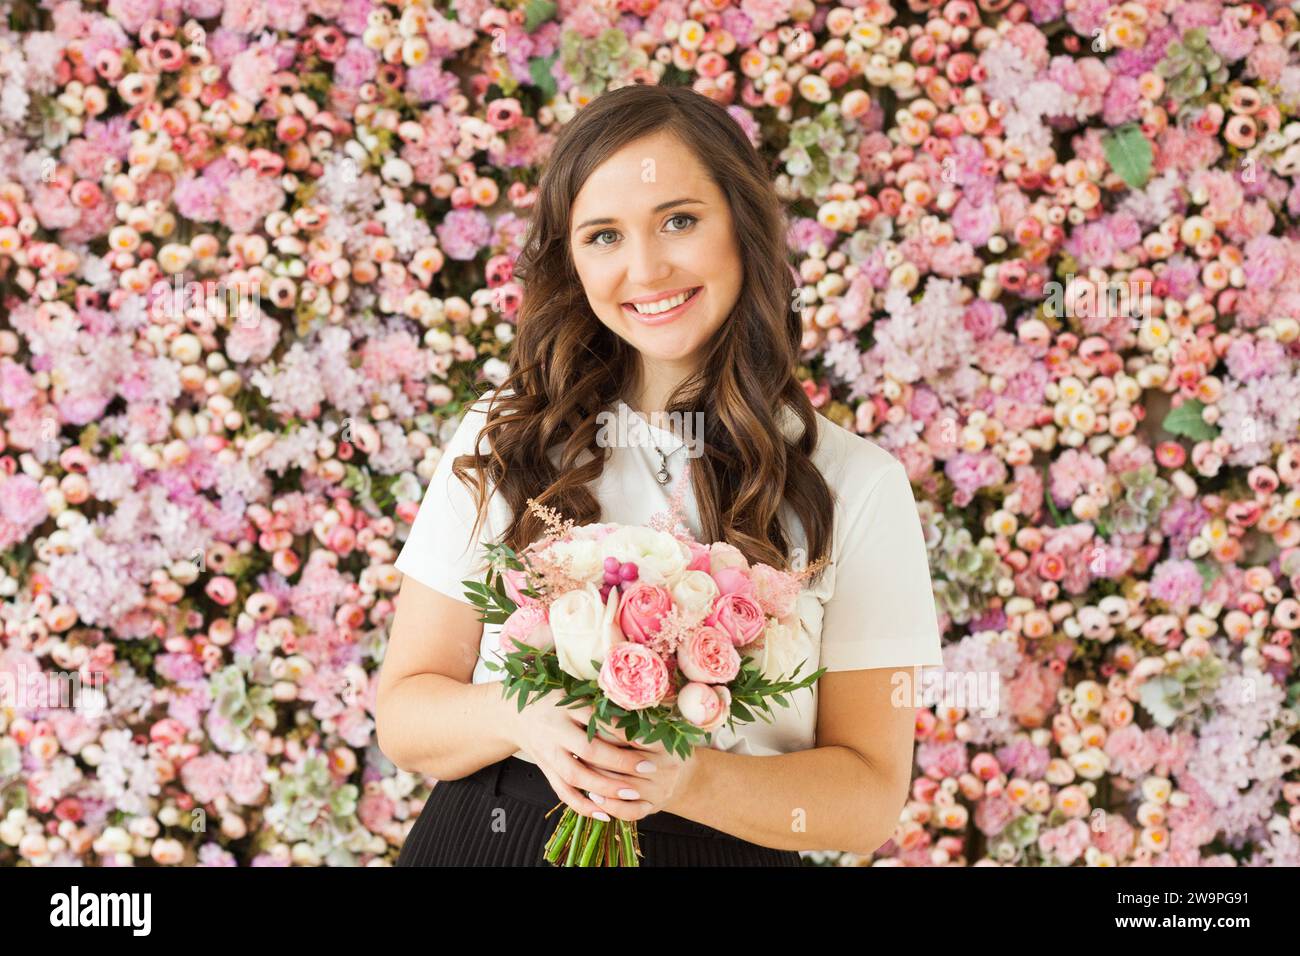 Frühlingsportrait einer glücklichen brünetten Frau mit niedlichem Lächeln, das Blumengeschenk hält und auf rosa floralem Hintergrund posiert. Blooming, Liebe, 8. märz Geburtstag, ho Stockfoto